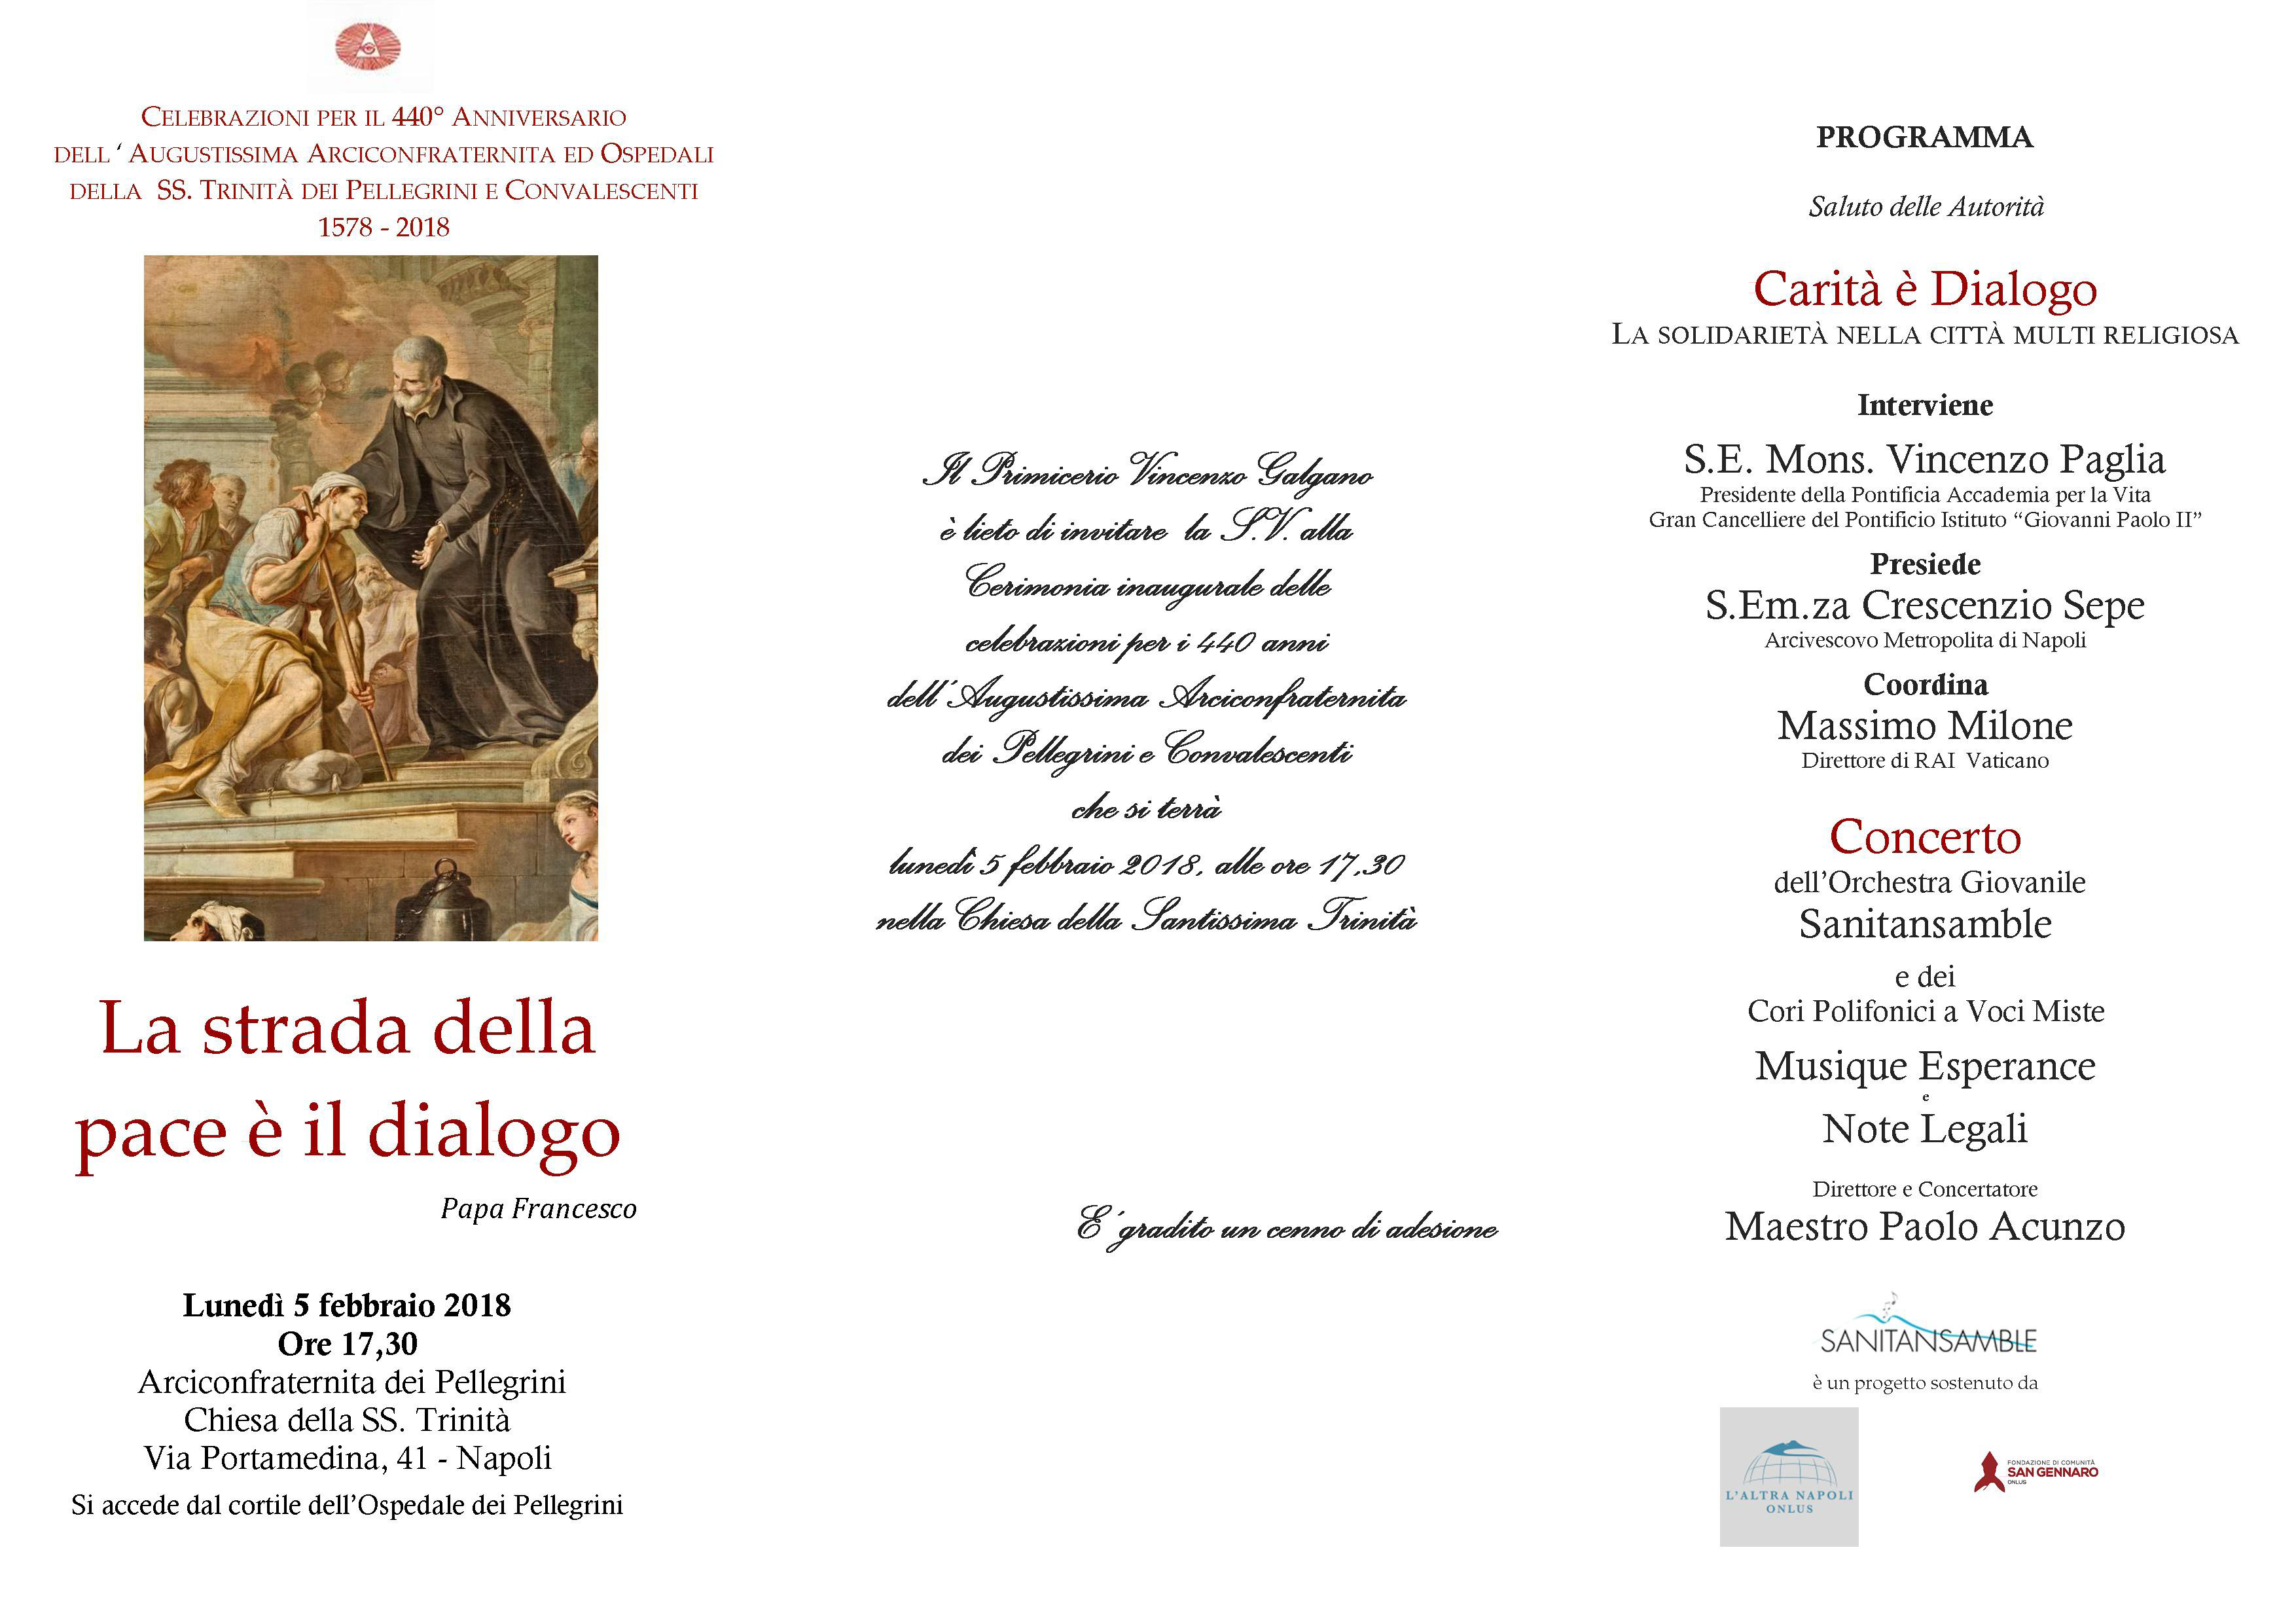 (Italiano) I 440 anni dell’Arciconfraternita del Pellegrini. Napoli, 5 febbraio 2018